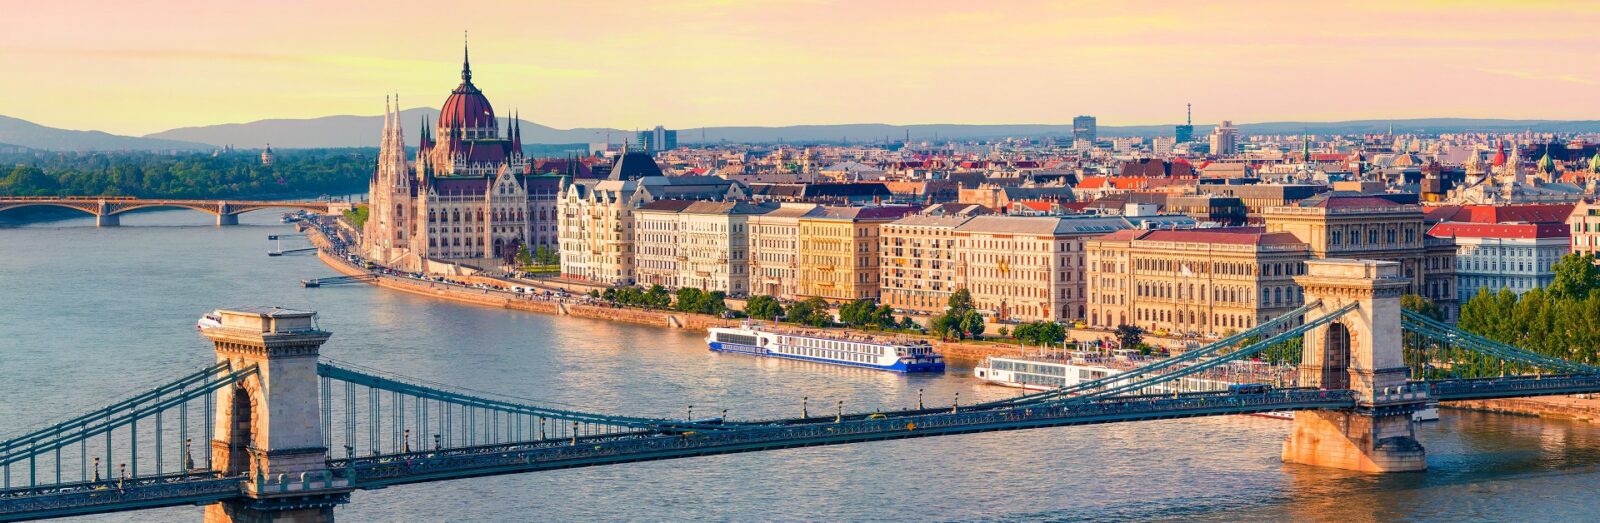 Bei einem Landausflug besuchen Sie die wichtigsten Highlights von Budapest, darunter die Kettenbrücke